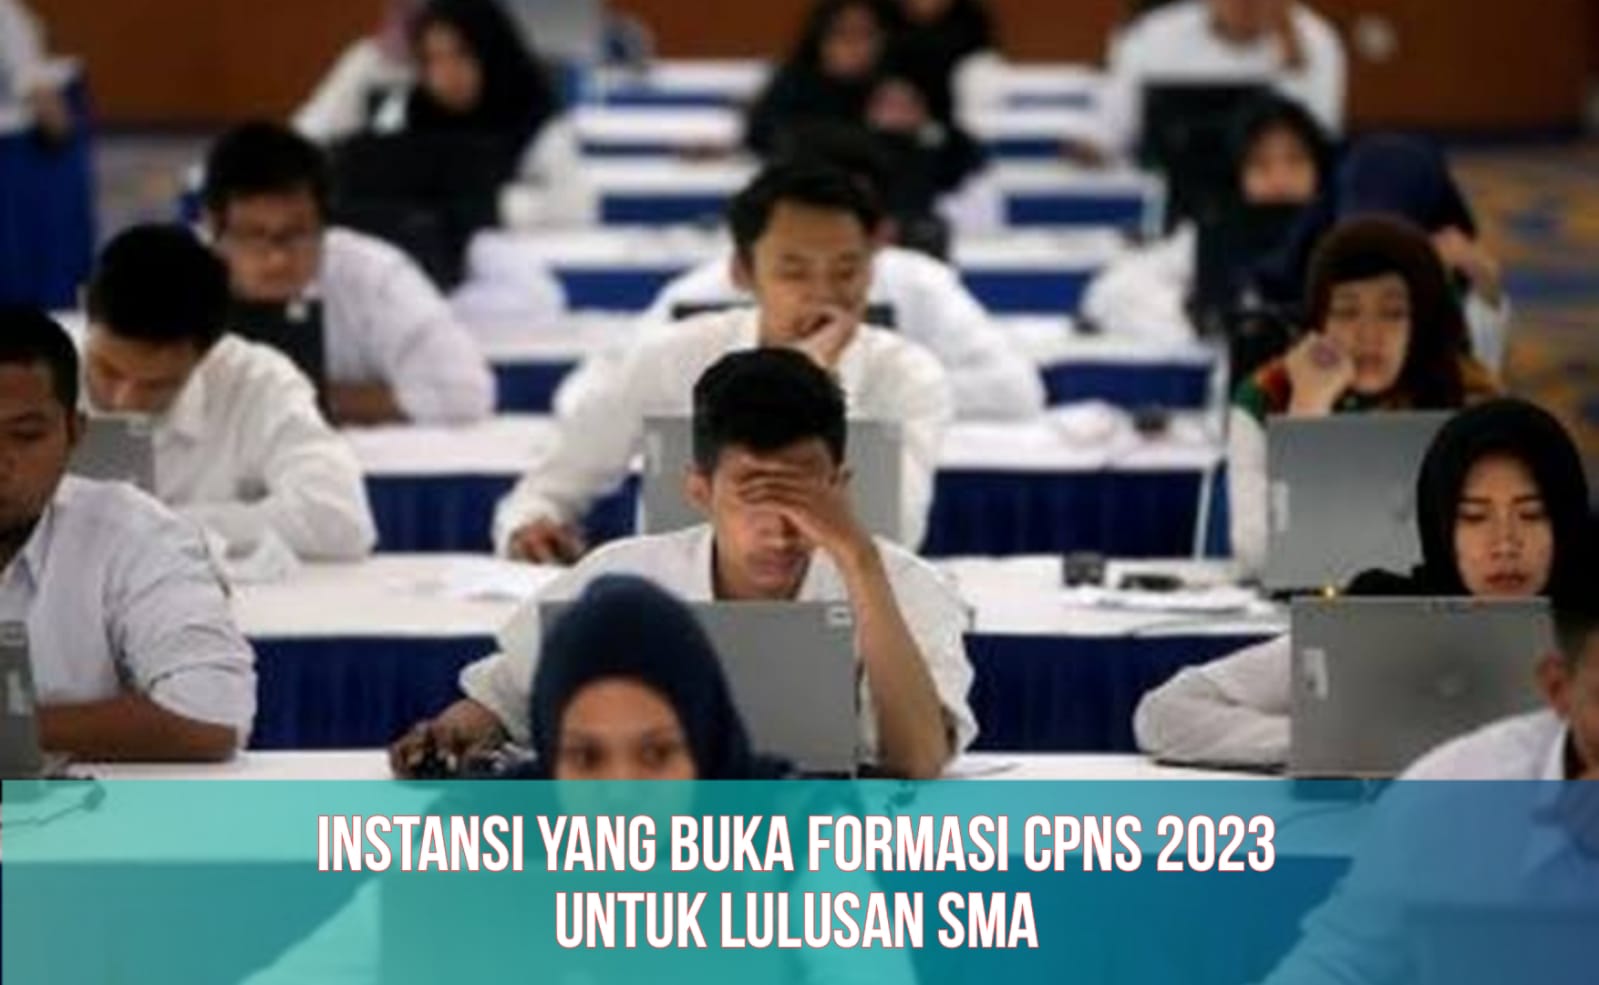 Daftar Instansi yang Buka Formasi CPNS 2023 untuk Lulusan SMA, Lengkap dengan Syaratnya